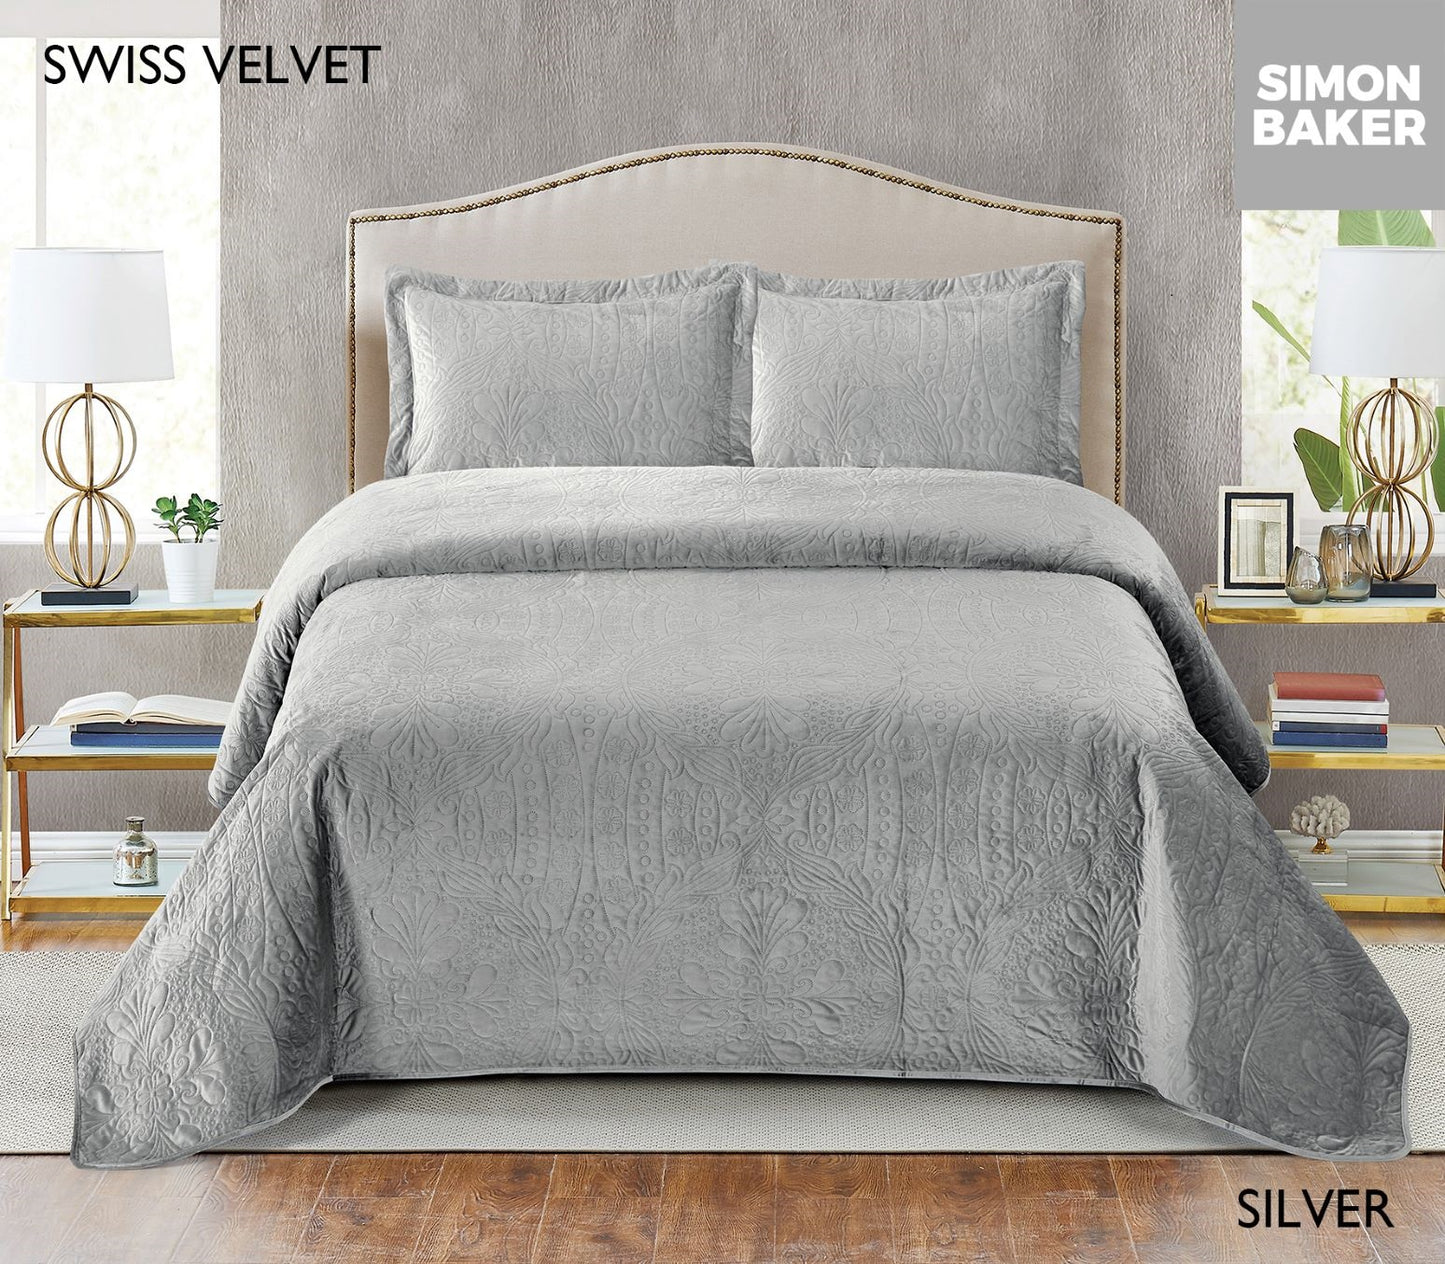 Simon Baker | Swiss Velvet Bedspread - Silver (Various Sizes)